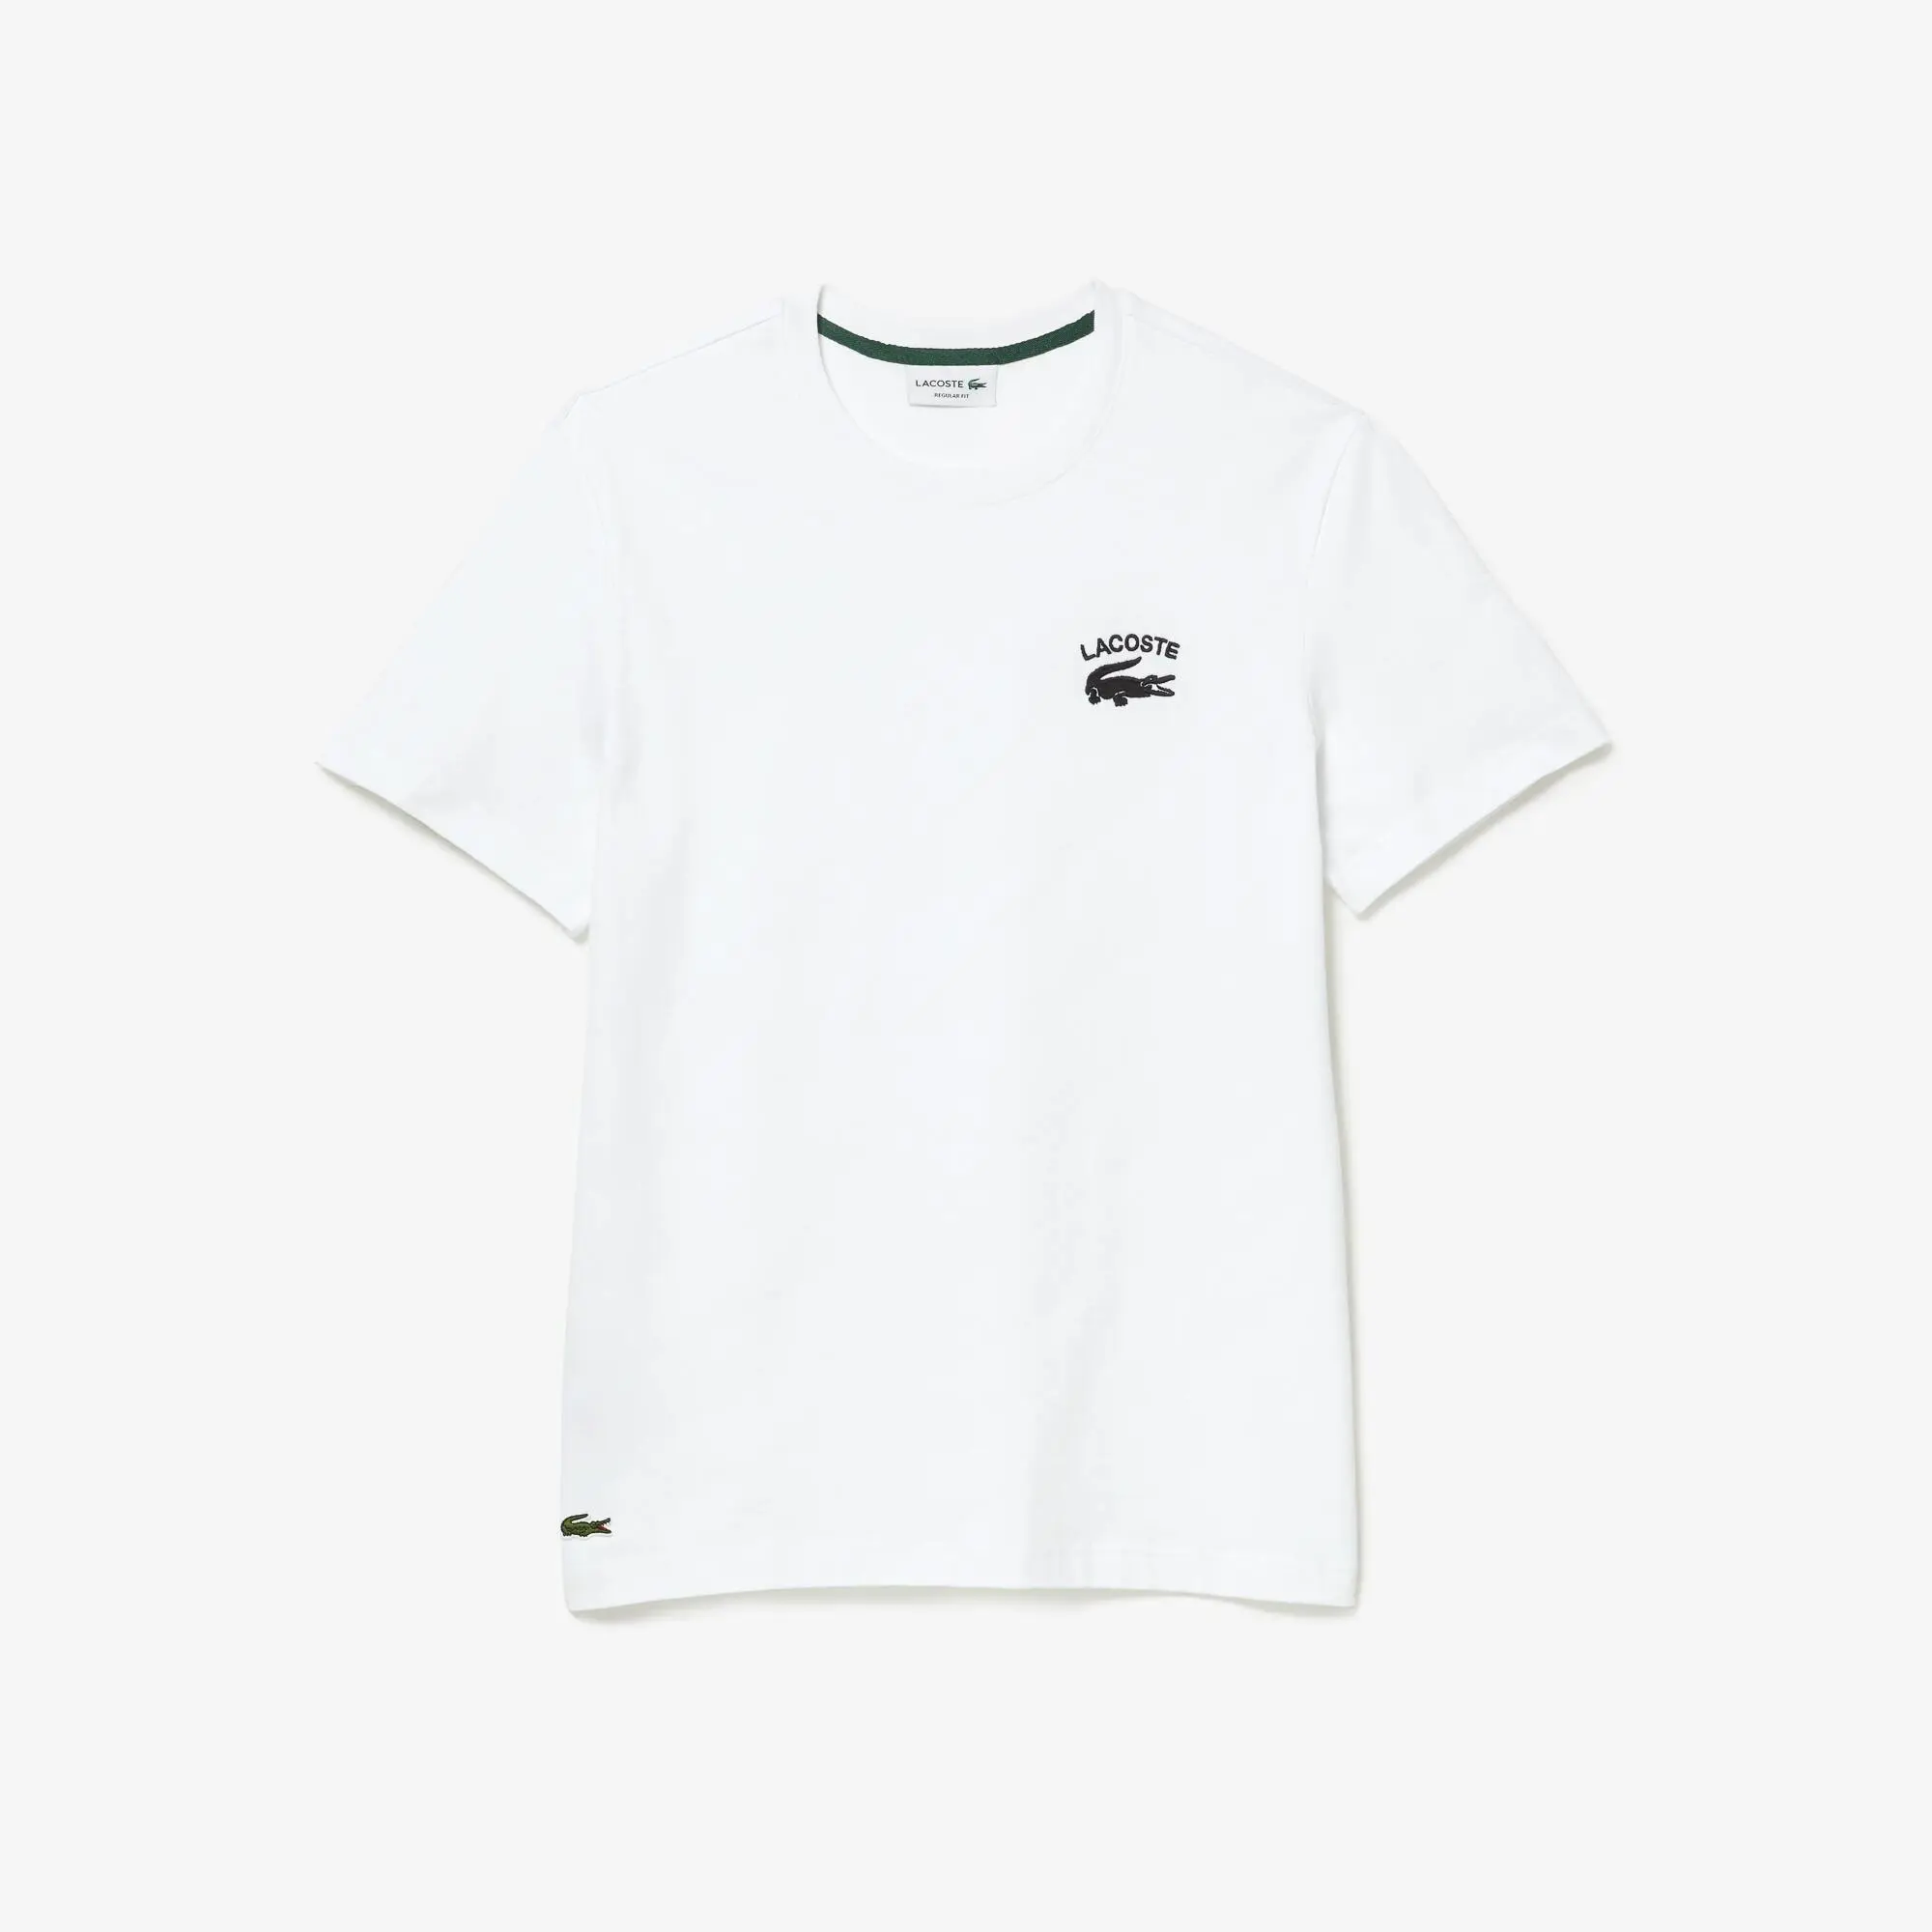 Lacoste T-shirt regular fit malha de algodão Lacoste para homem. 2